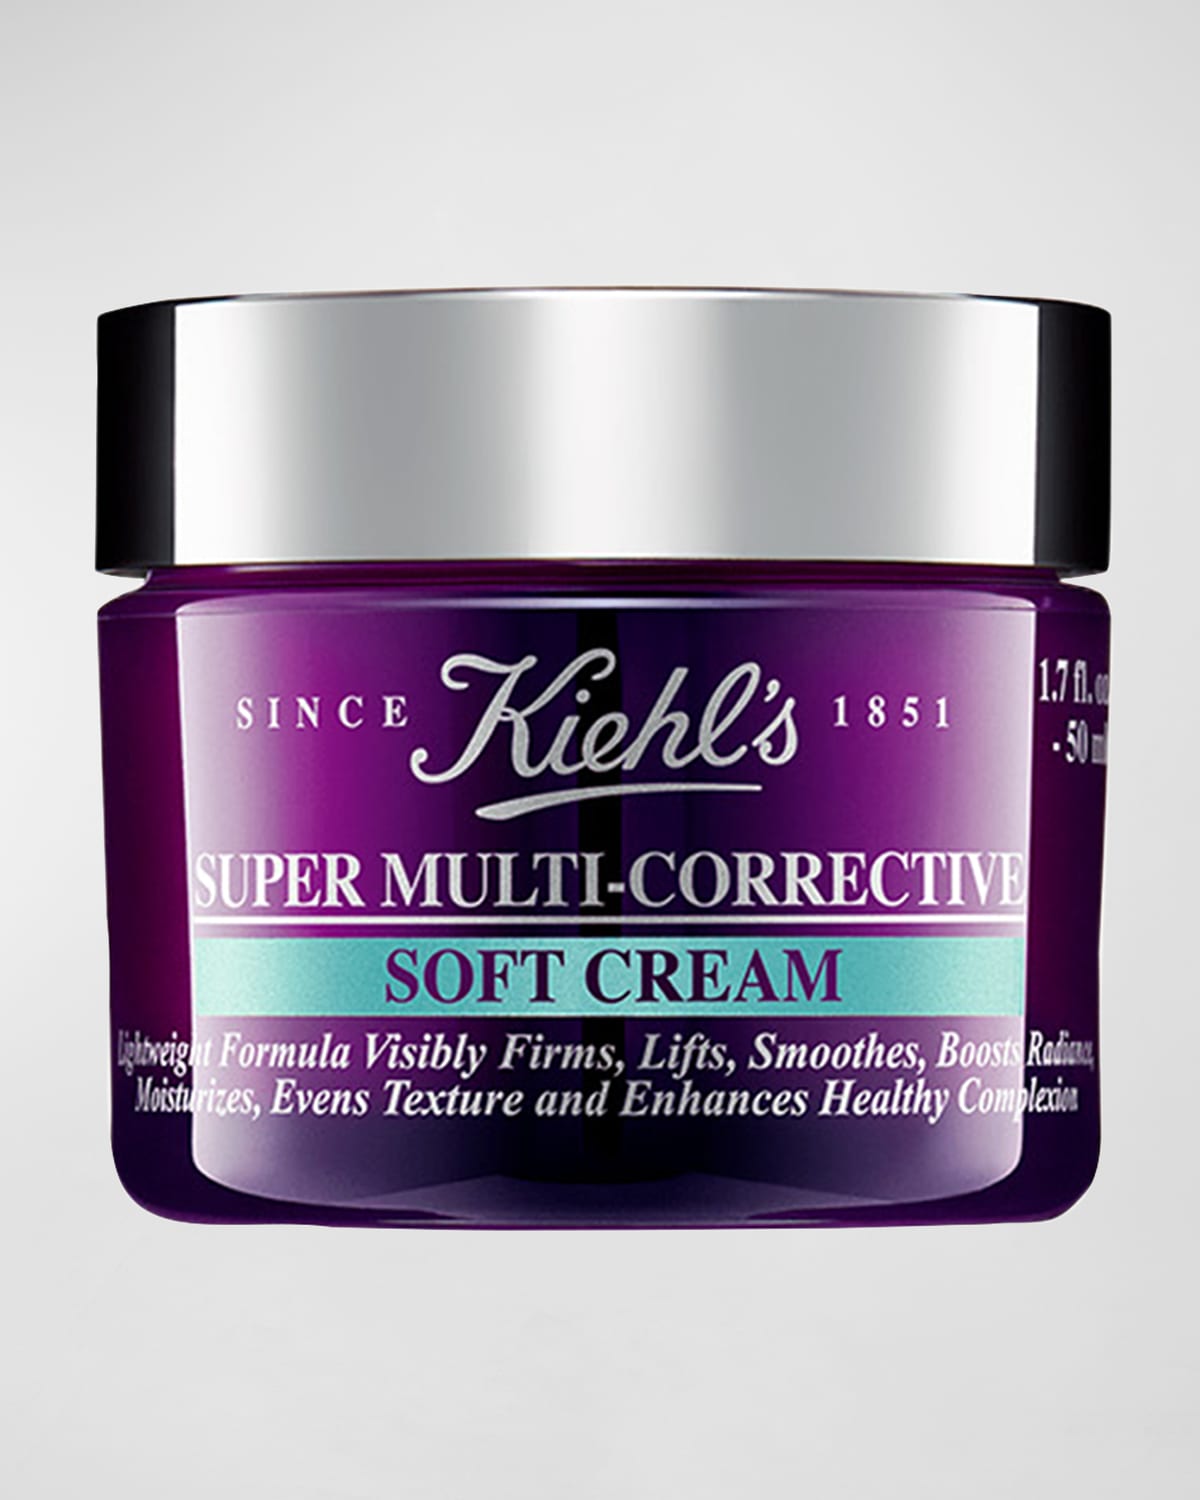 Super Multi-Corrective Soft Cream, 1.7 oz.